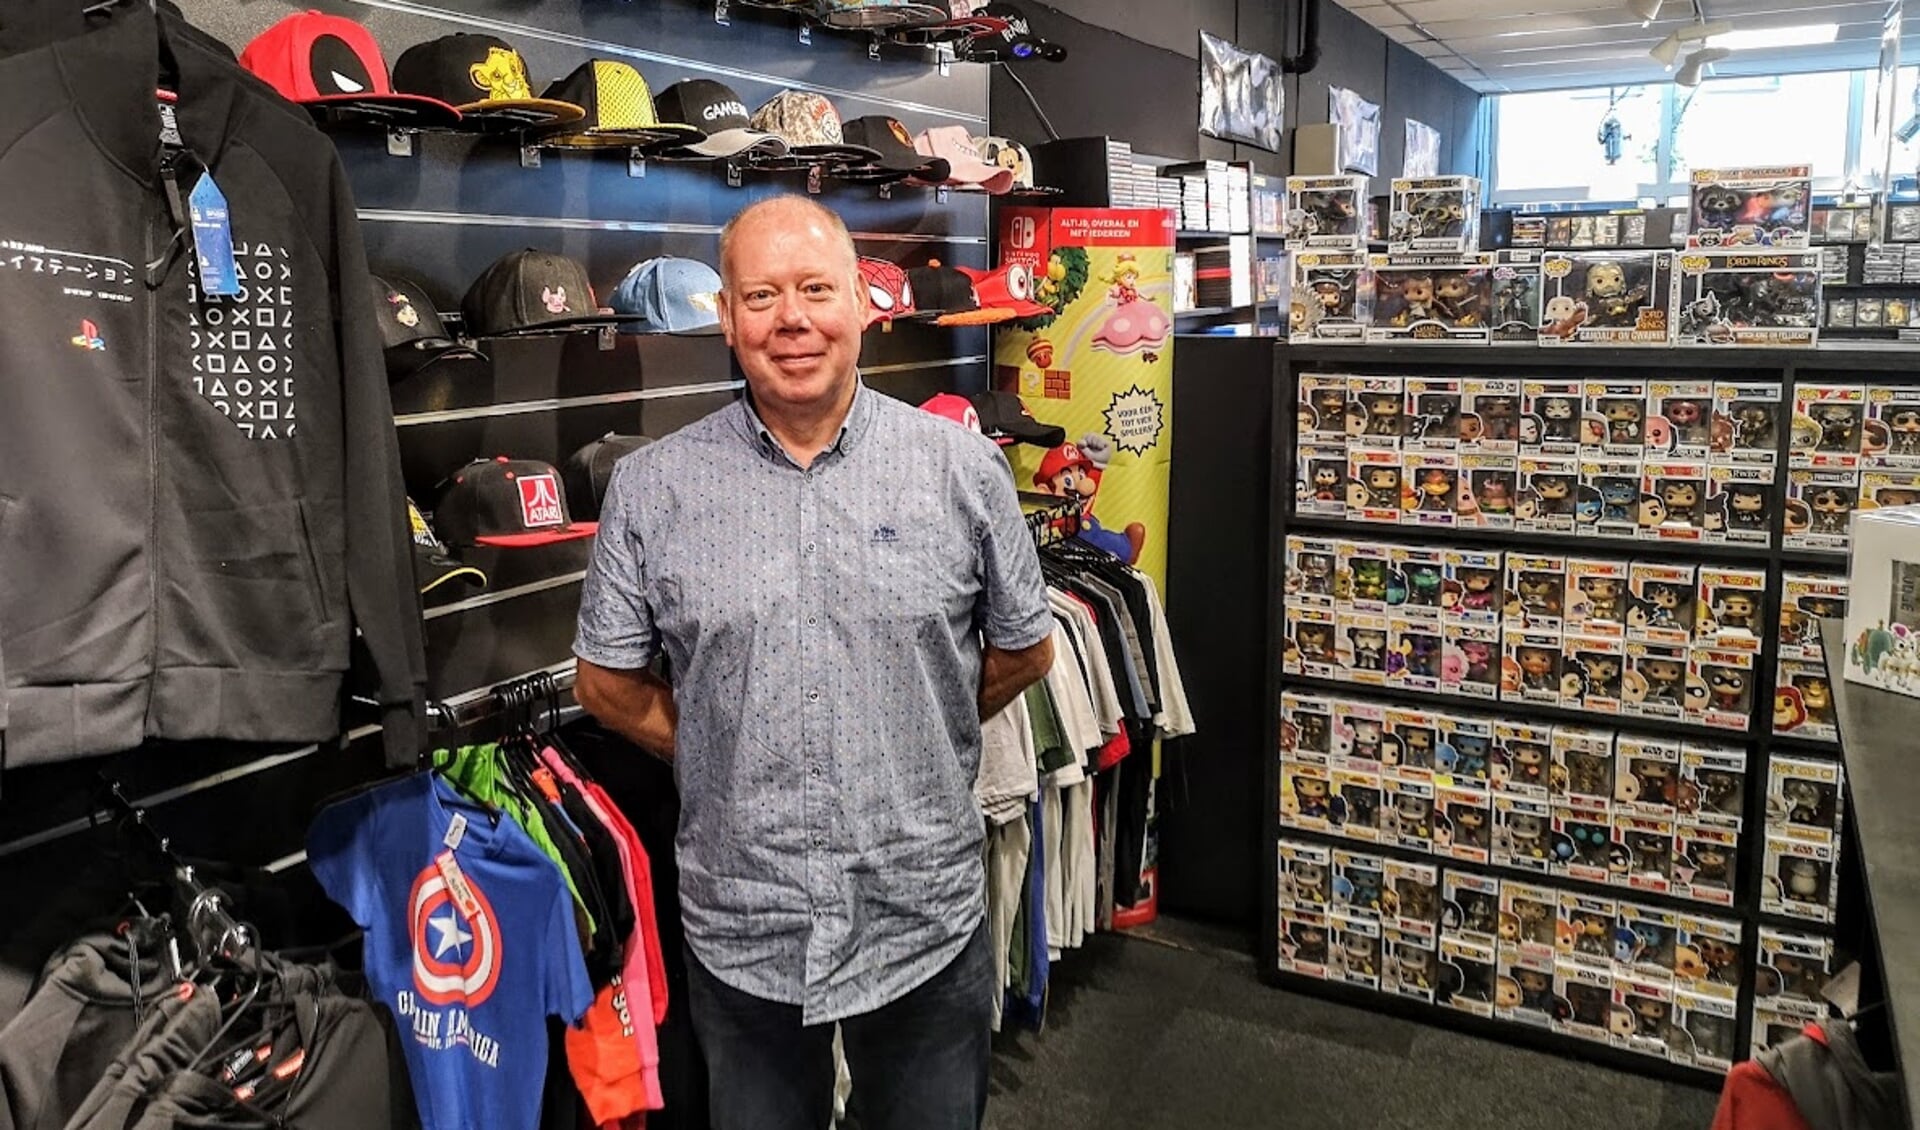 Han Denkers bij de afdeling in de winkel met merchandise die tegenwoordig bij veel games verschijnt. Foto: Henri Bruntink